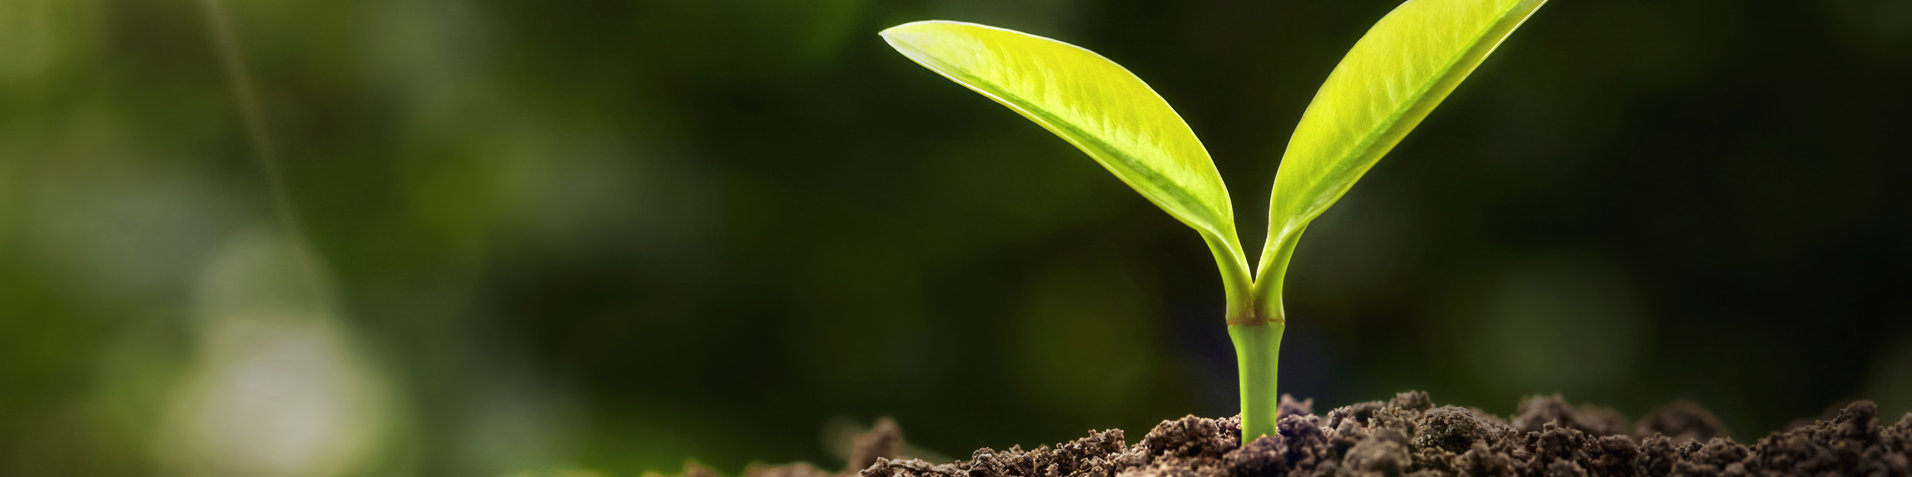 Bei der offino Bürolösungen GmbH genießen Nachhaltigkeit und Umweltschutz einen enorm hohen Stellenwert – zur Visualisierung des Umwelt-Gedankens ist ein junger Sprößling einer Pflanze zu sehen, welche im Sonnenlicht aus fruchtbarer Erde emporwächst.